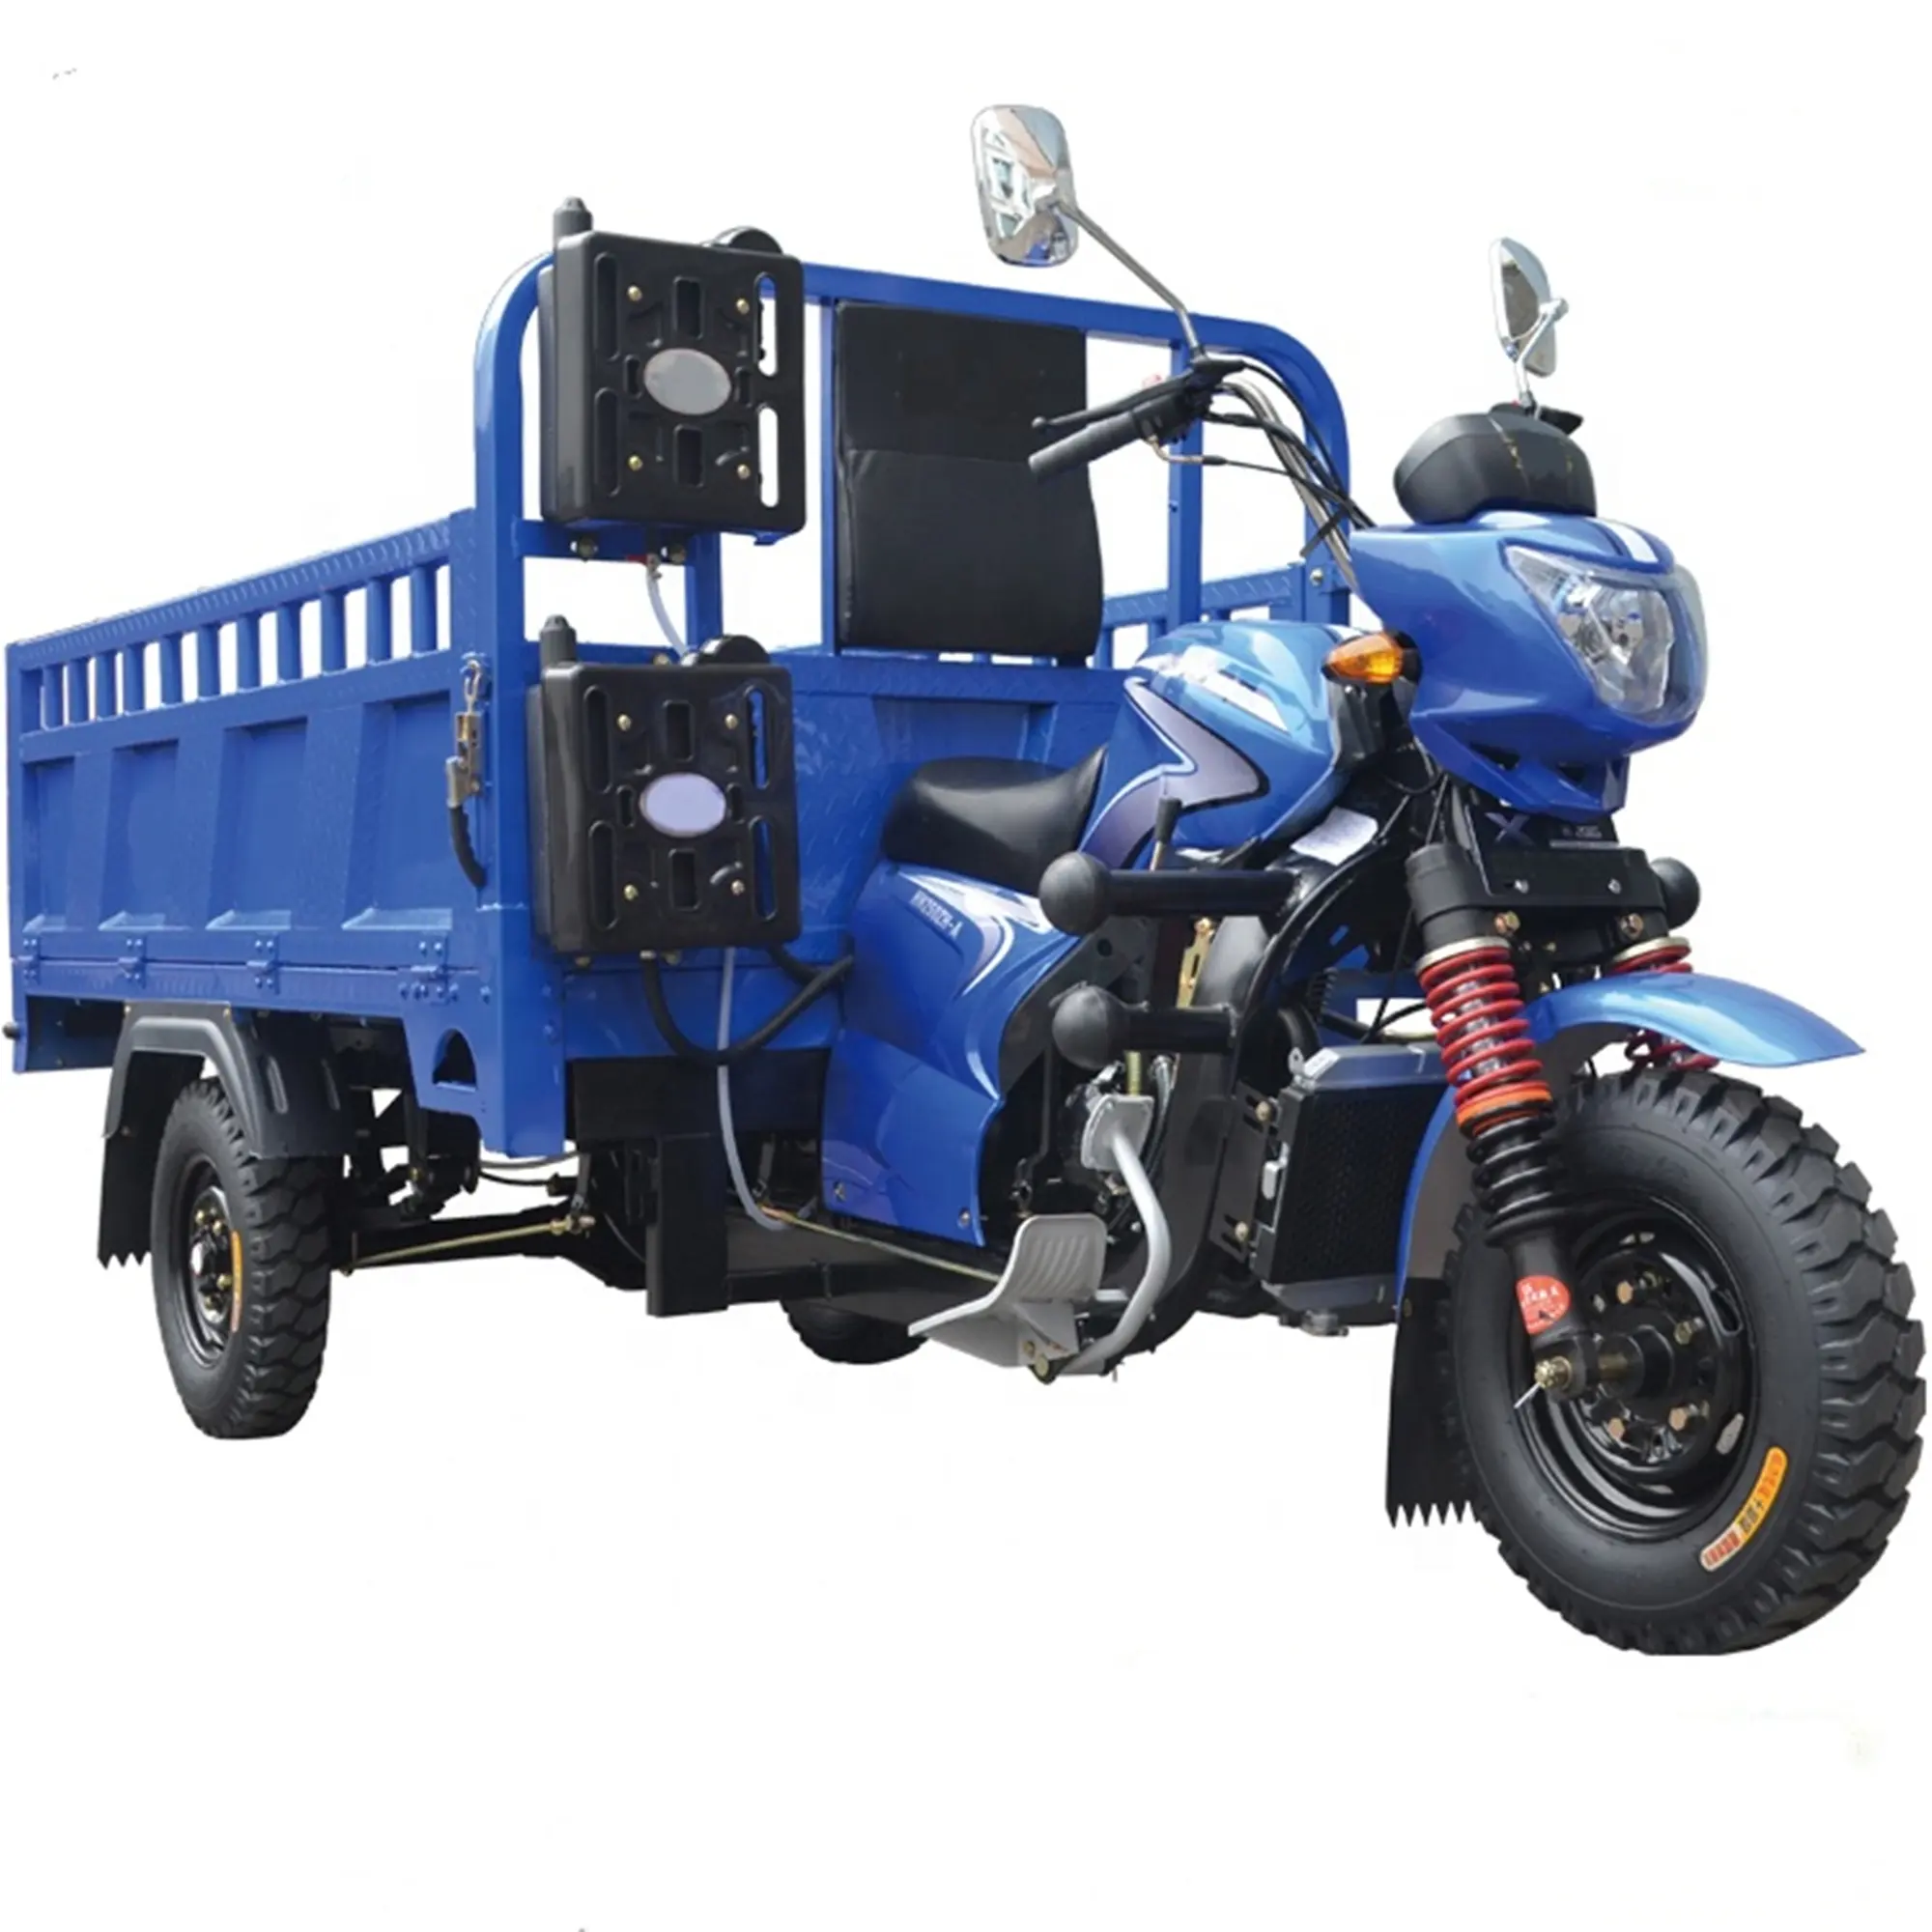 मोटर चालित ड्राइविंग प्रकार 200CC खेती Tricycle/कार्गो उपयोग तीन पहिया मोटर साइकिल